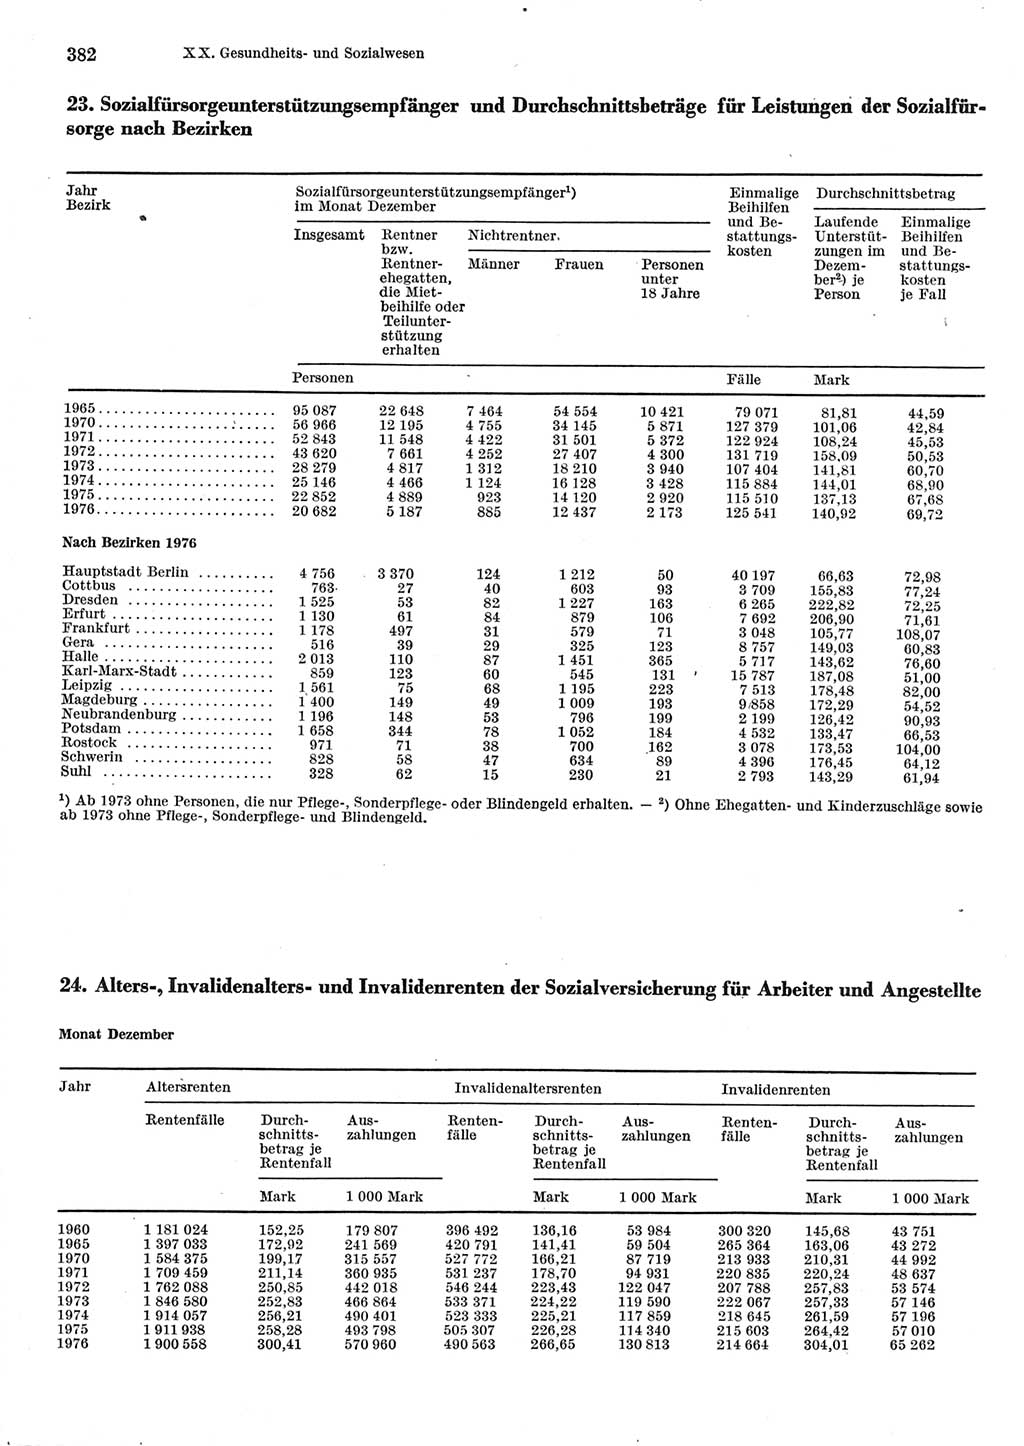 Statistisches Jahrbuch der Deutschen Demokratischen Republik (DDR) 1977, Seite 382 (Stat. Jb. DDR 1977, S. 382)